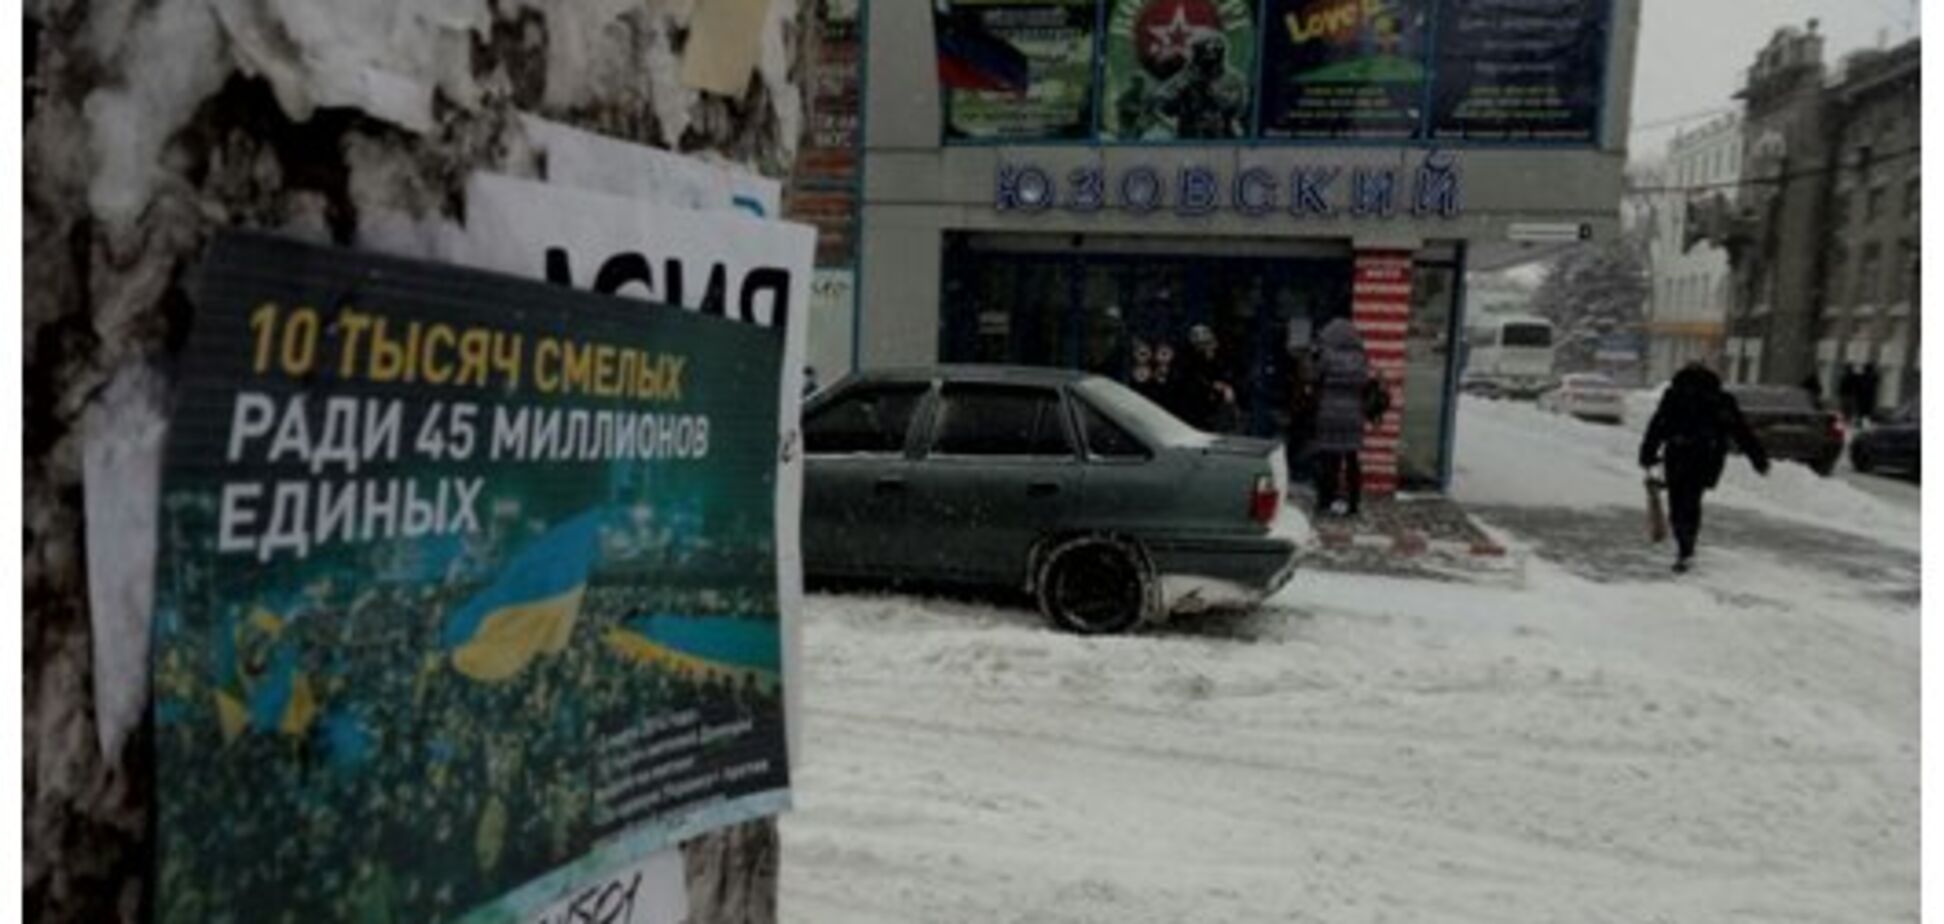 'Ради 45 миллионов единых': украинские патриоты в Донецке провели смелую акцию   